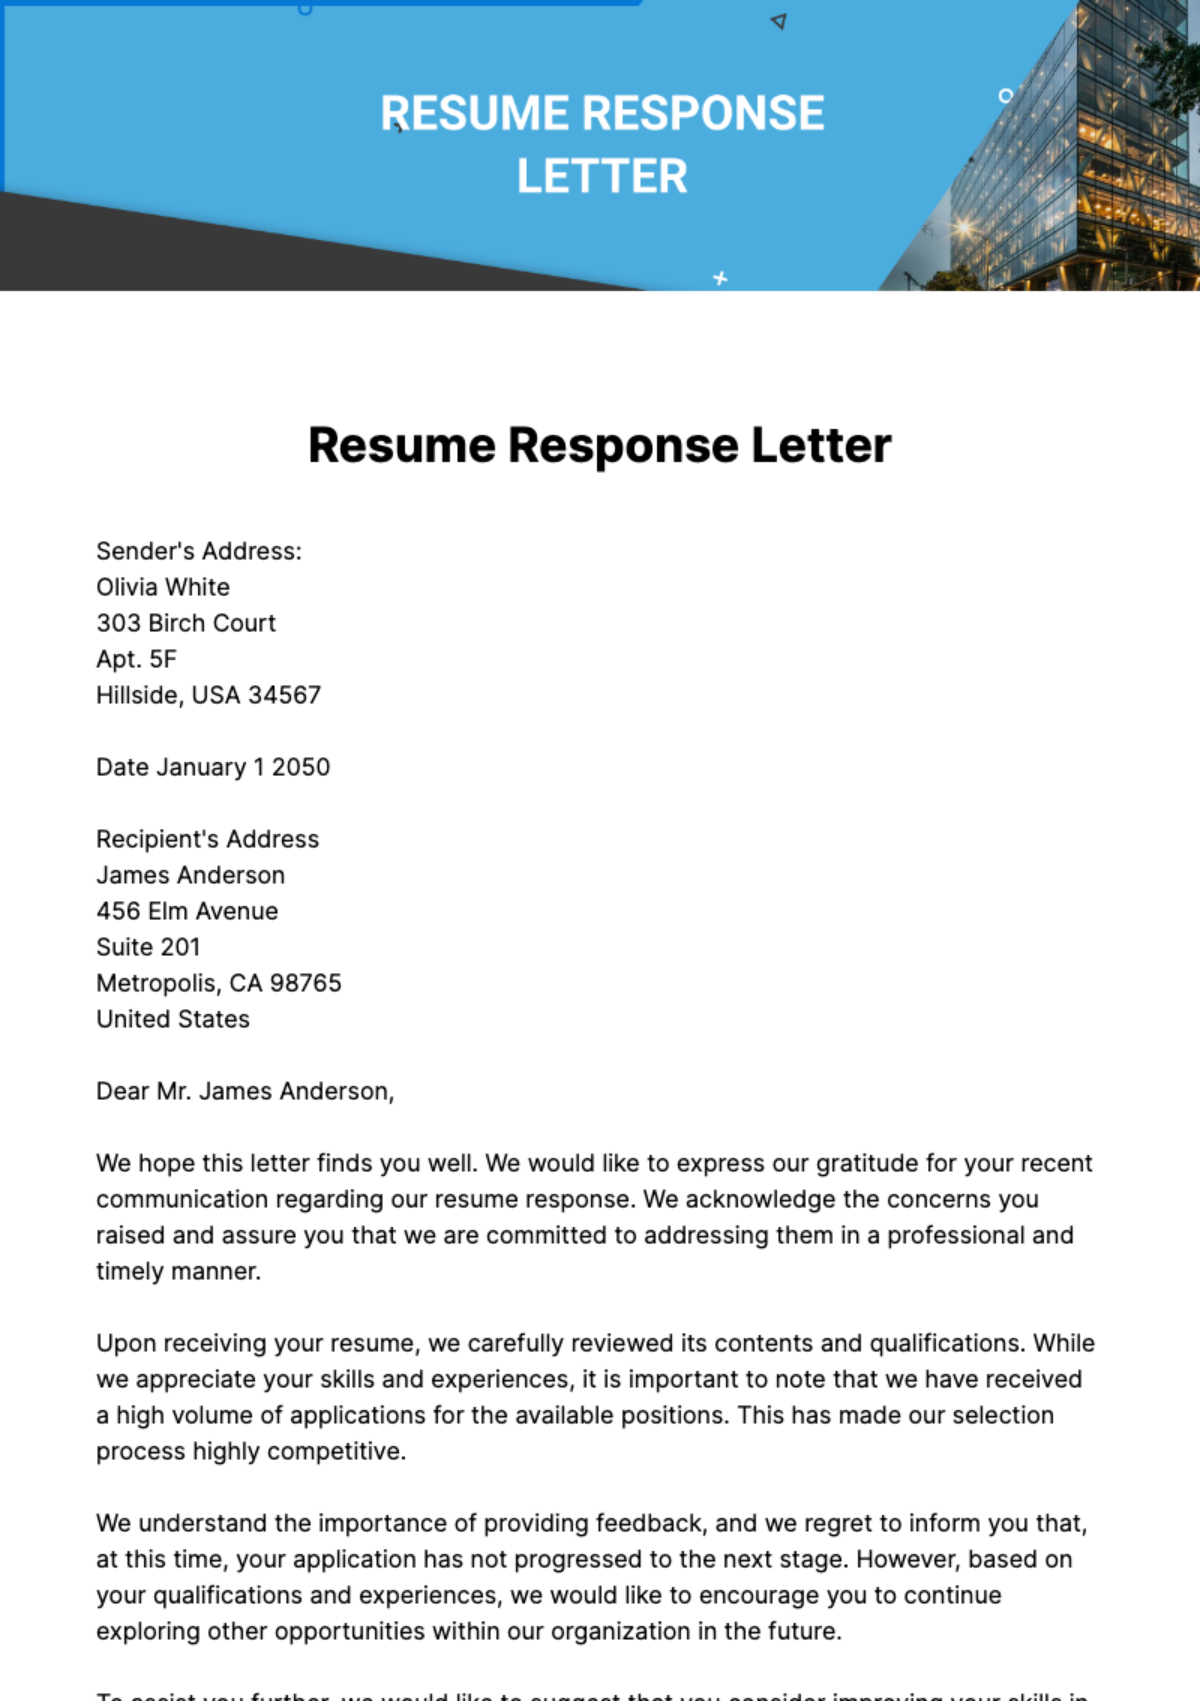 Resume Response Letter Template